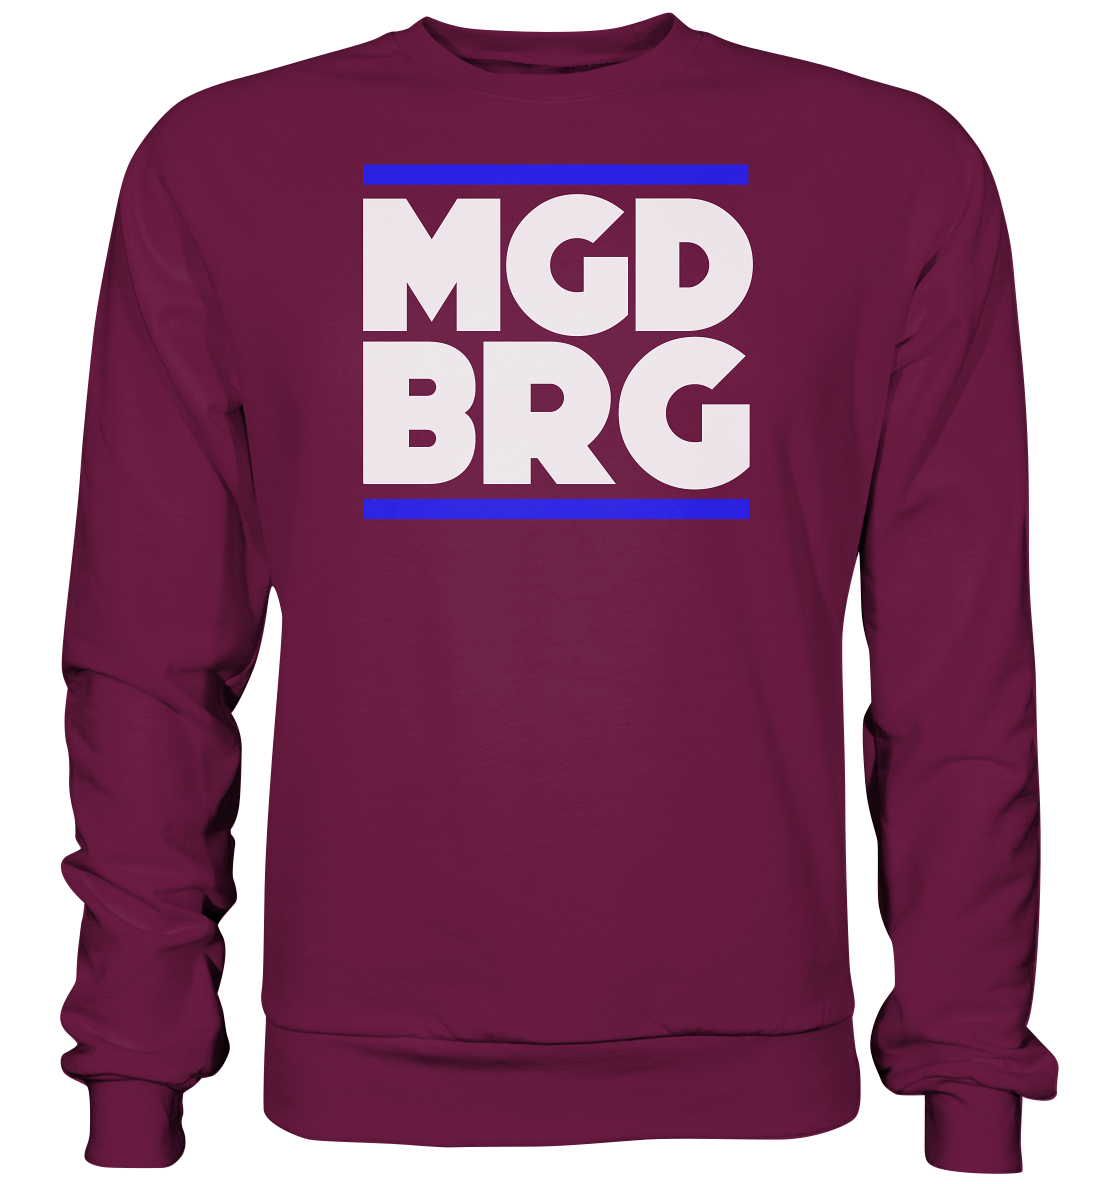 MGDBRG - Sweatshirt